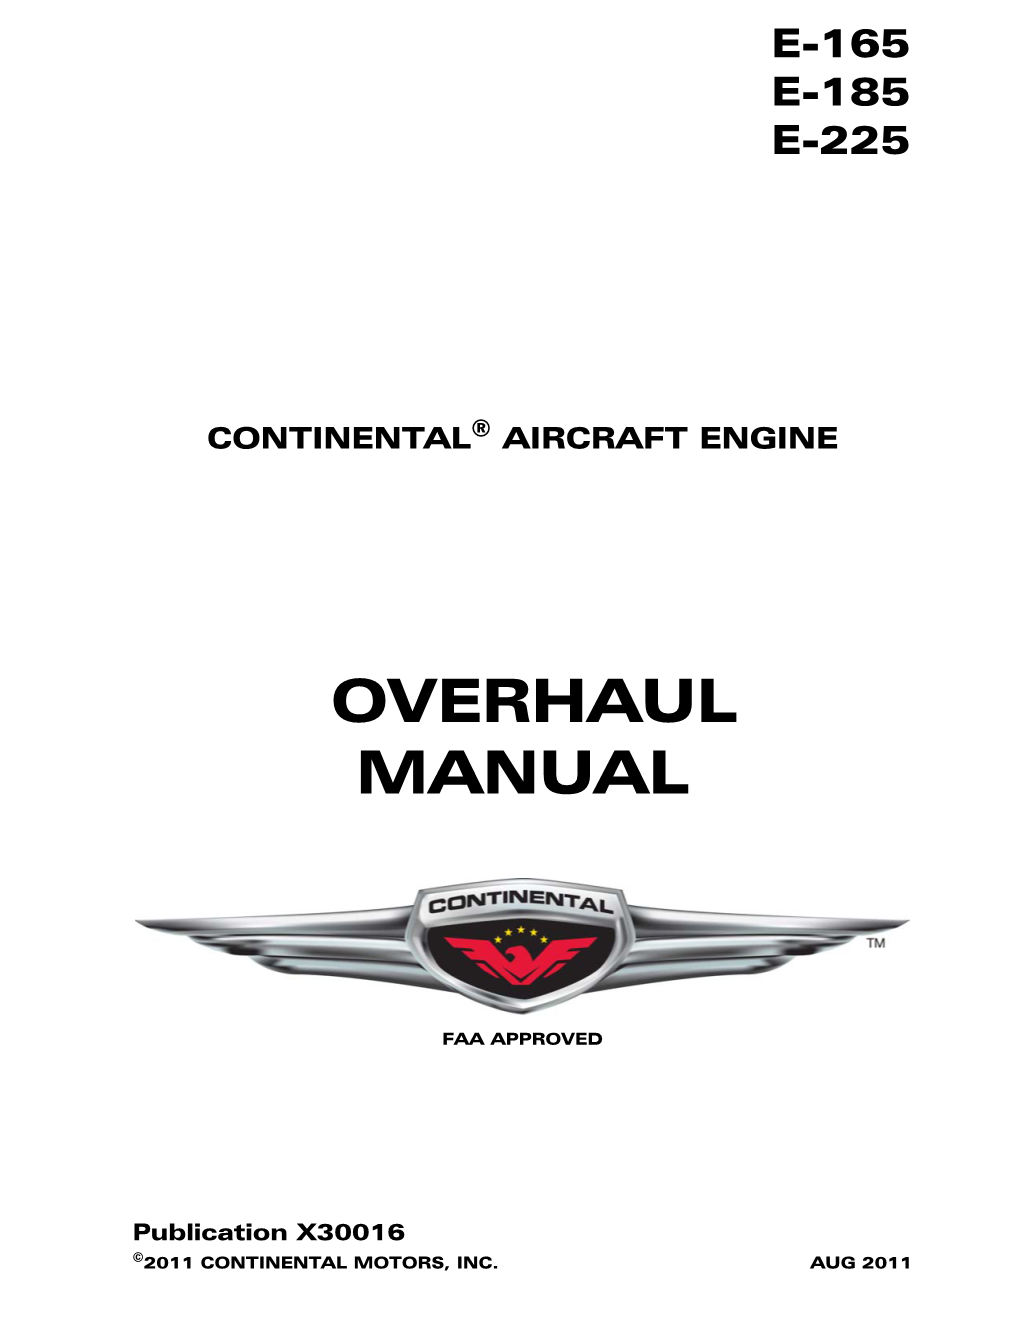 E-165, E-185 and E-225 Series Engine Overhaul Manual